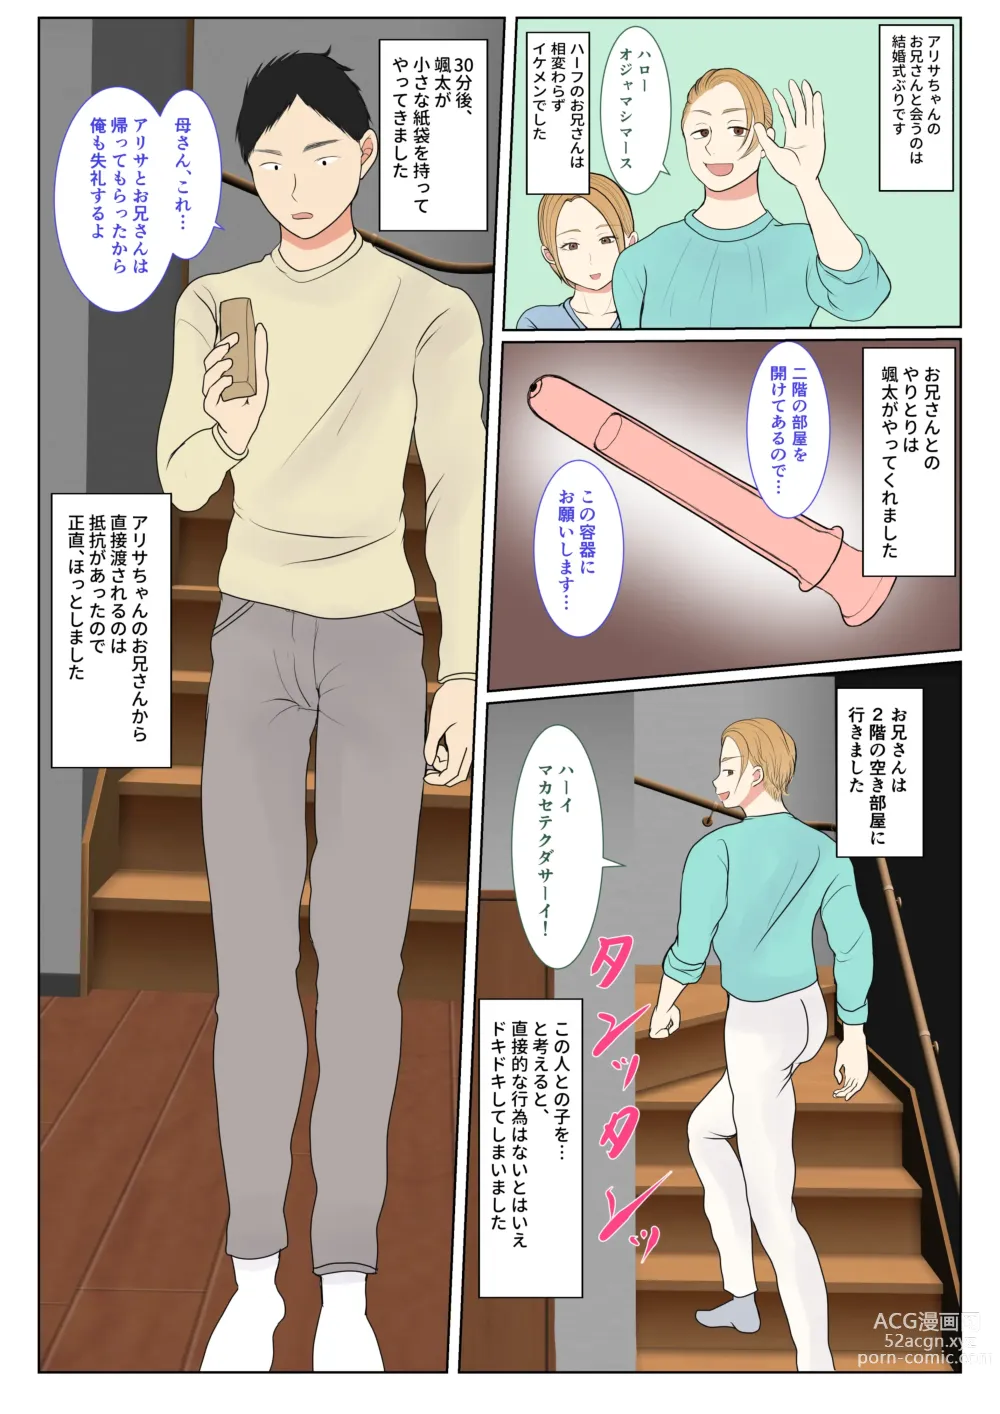 Page 12 of doujinshi Jitsubo Dairi Shussan 〜Nanae-hen〜